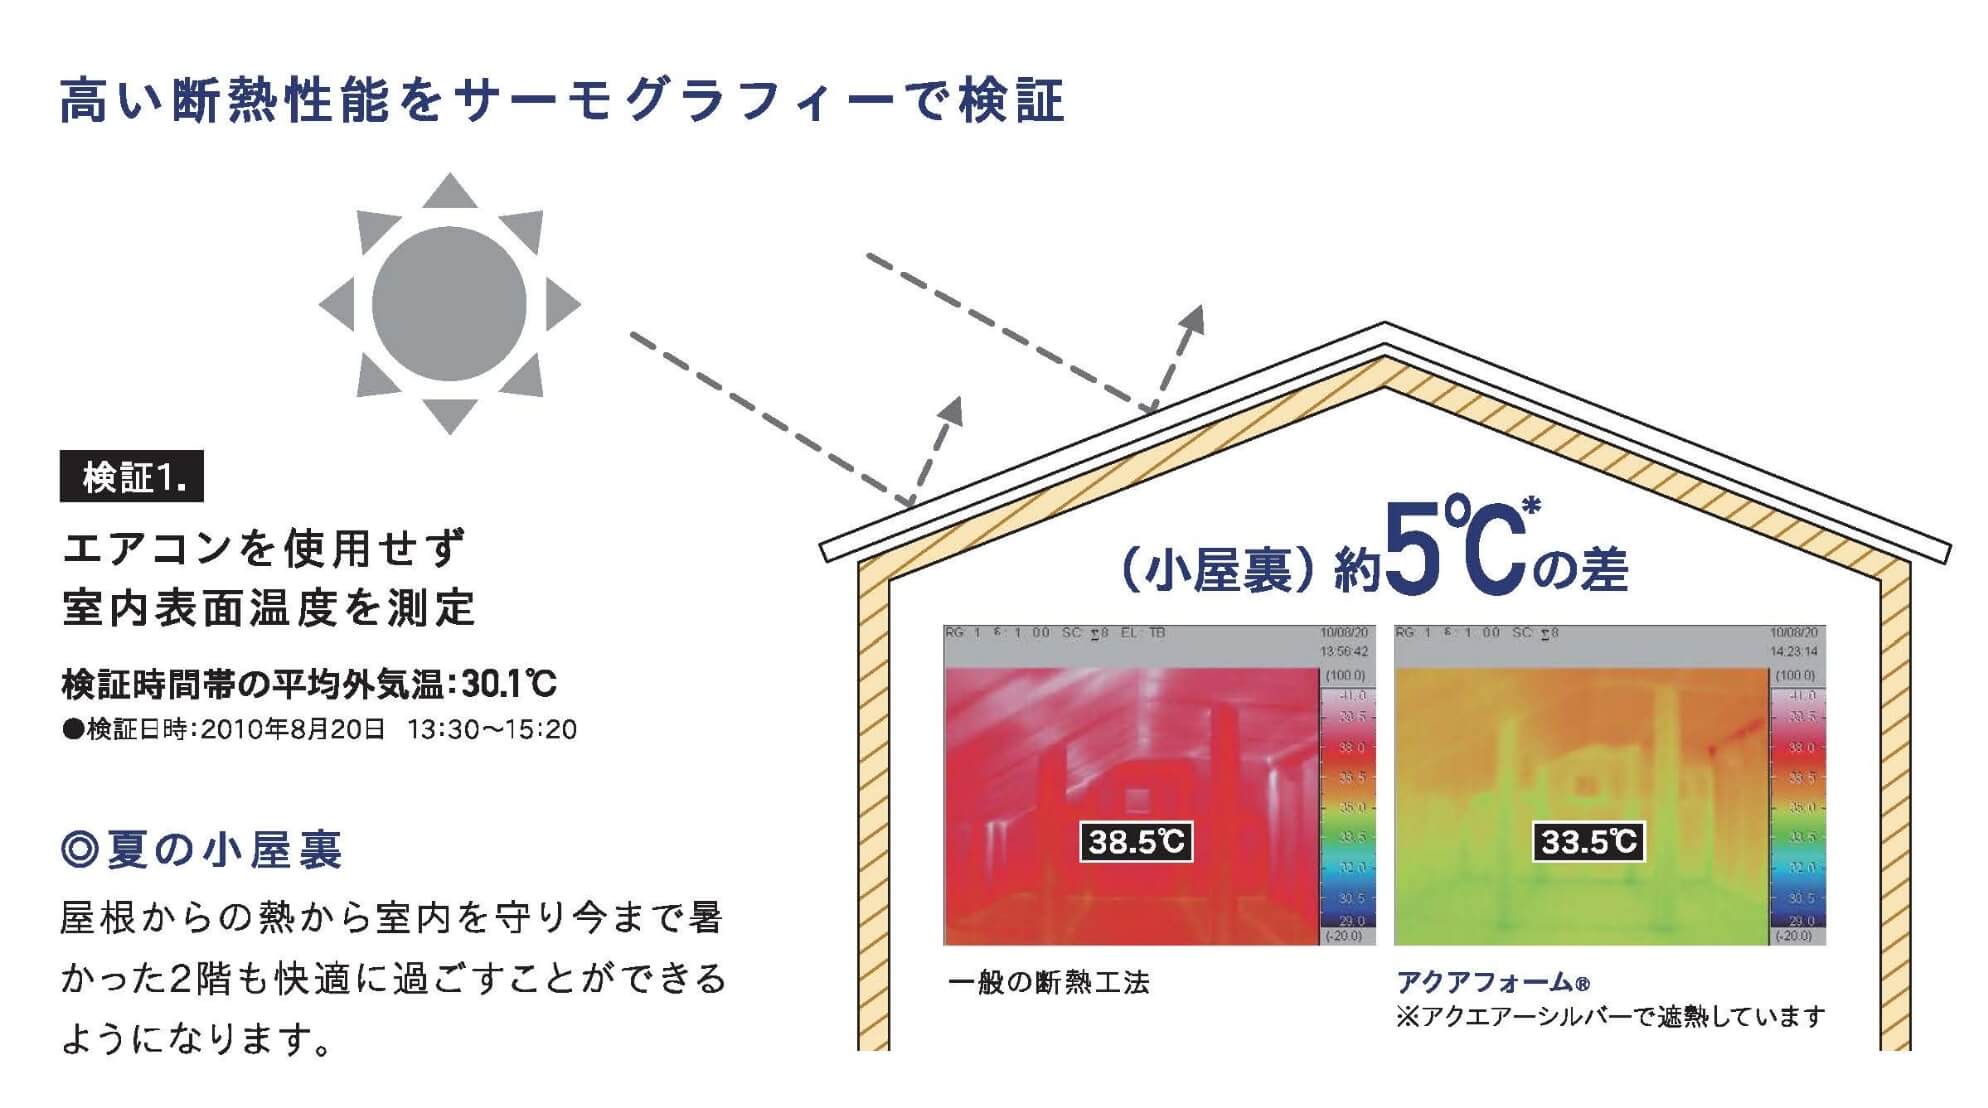 高い断熱性能をサーモグラフィーで検証。検証1.エアコンを使用せず室内表面温度を測定 検証時間帯の平均外気温30.1℃ ・検証日時：2010年8月20日 13時30分〜15時20分　・検証場所 夏の小屋裏 ・検証結果 一般の断熱工法 38.5℃ アクアフォーム®（アクエアーシルバーで遮熱しています）33.5℃　アクアフォーム®が約5℃低く、小屋からの熱が室内を守り今まで暑かった2階も快適に過ごすことができるようになります。